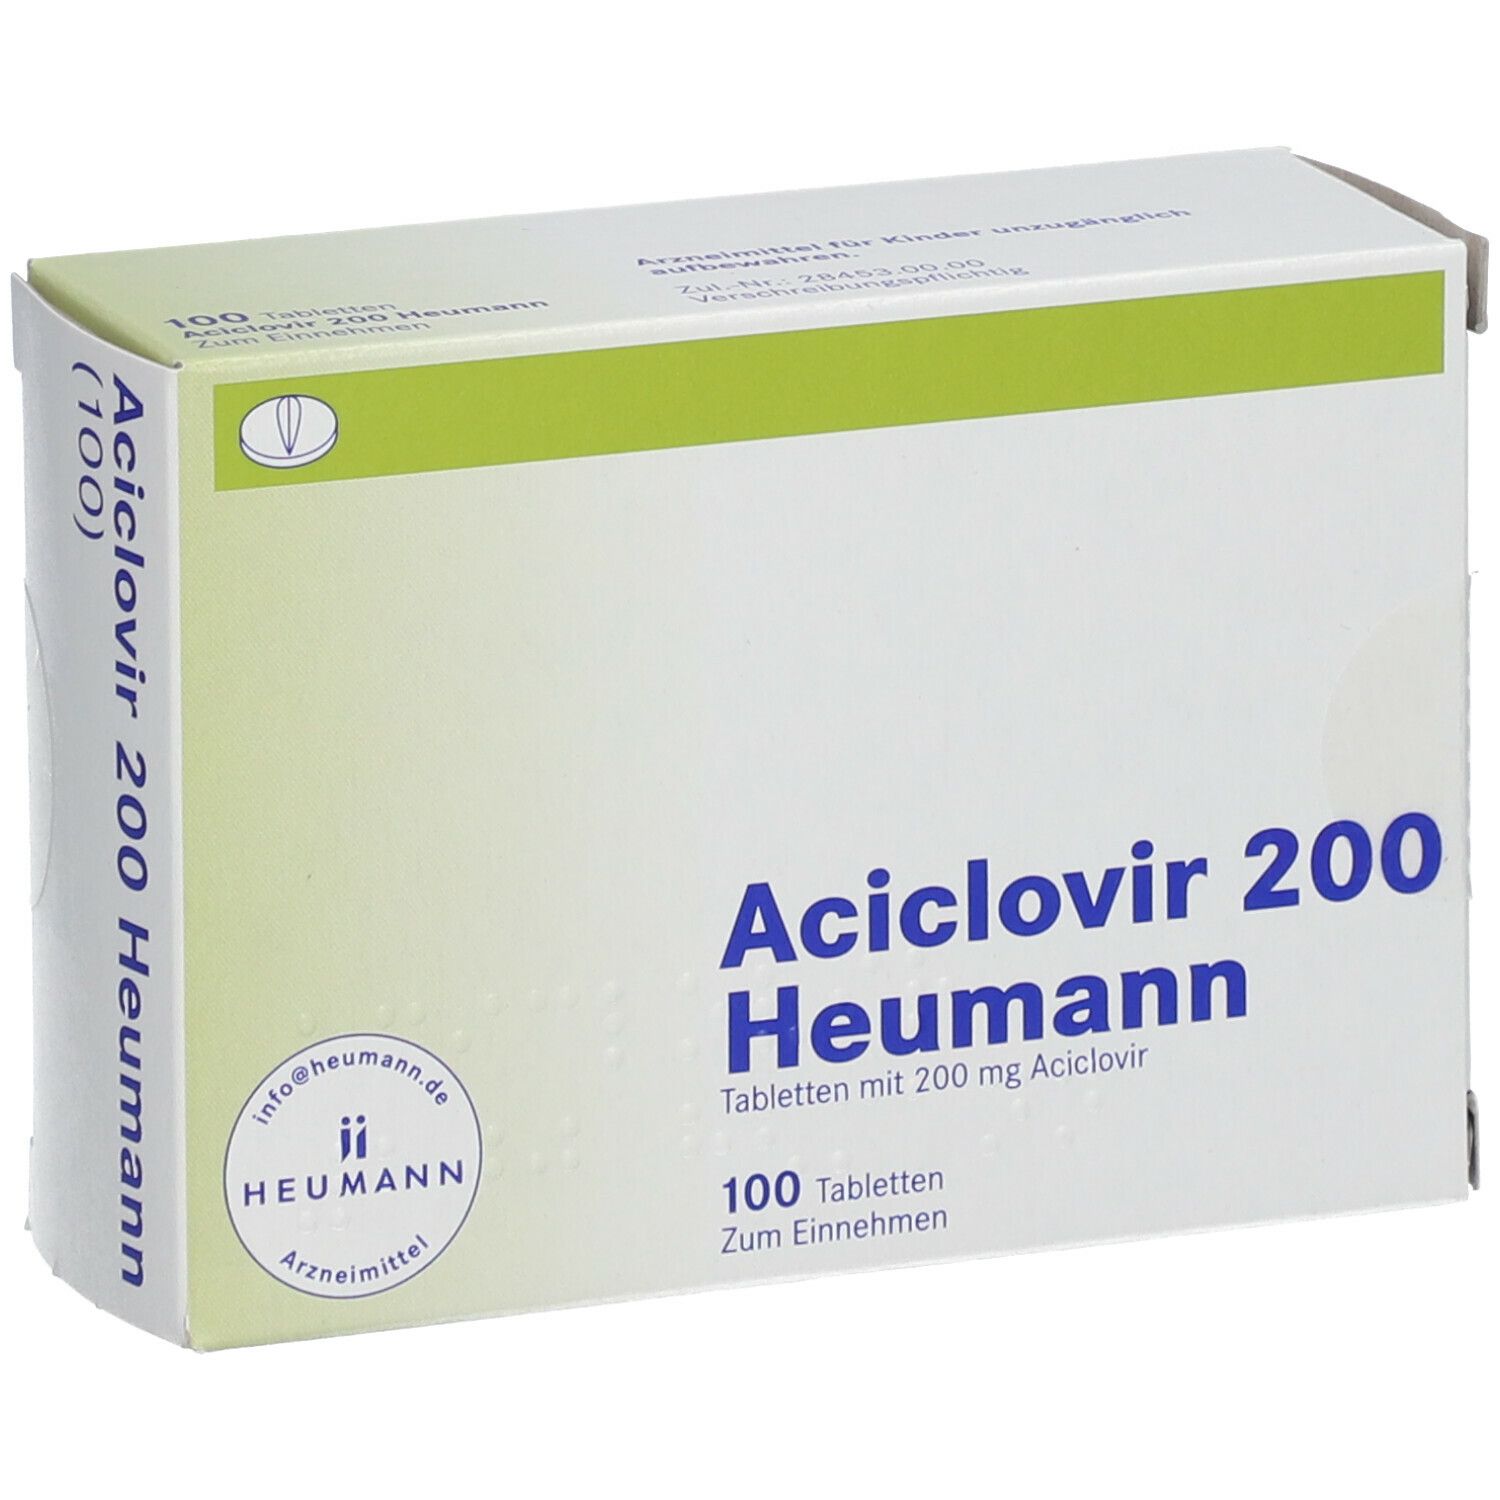 Aciclovir 200 Heumann